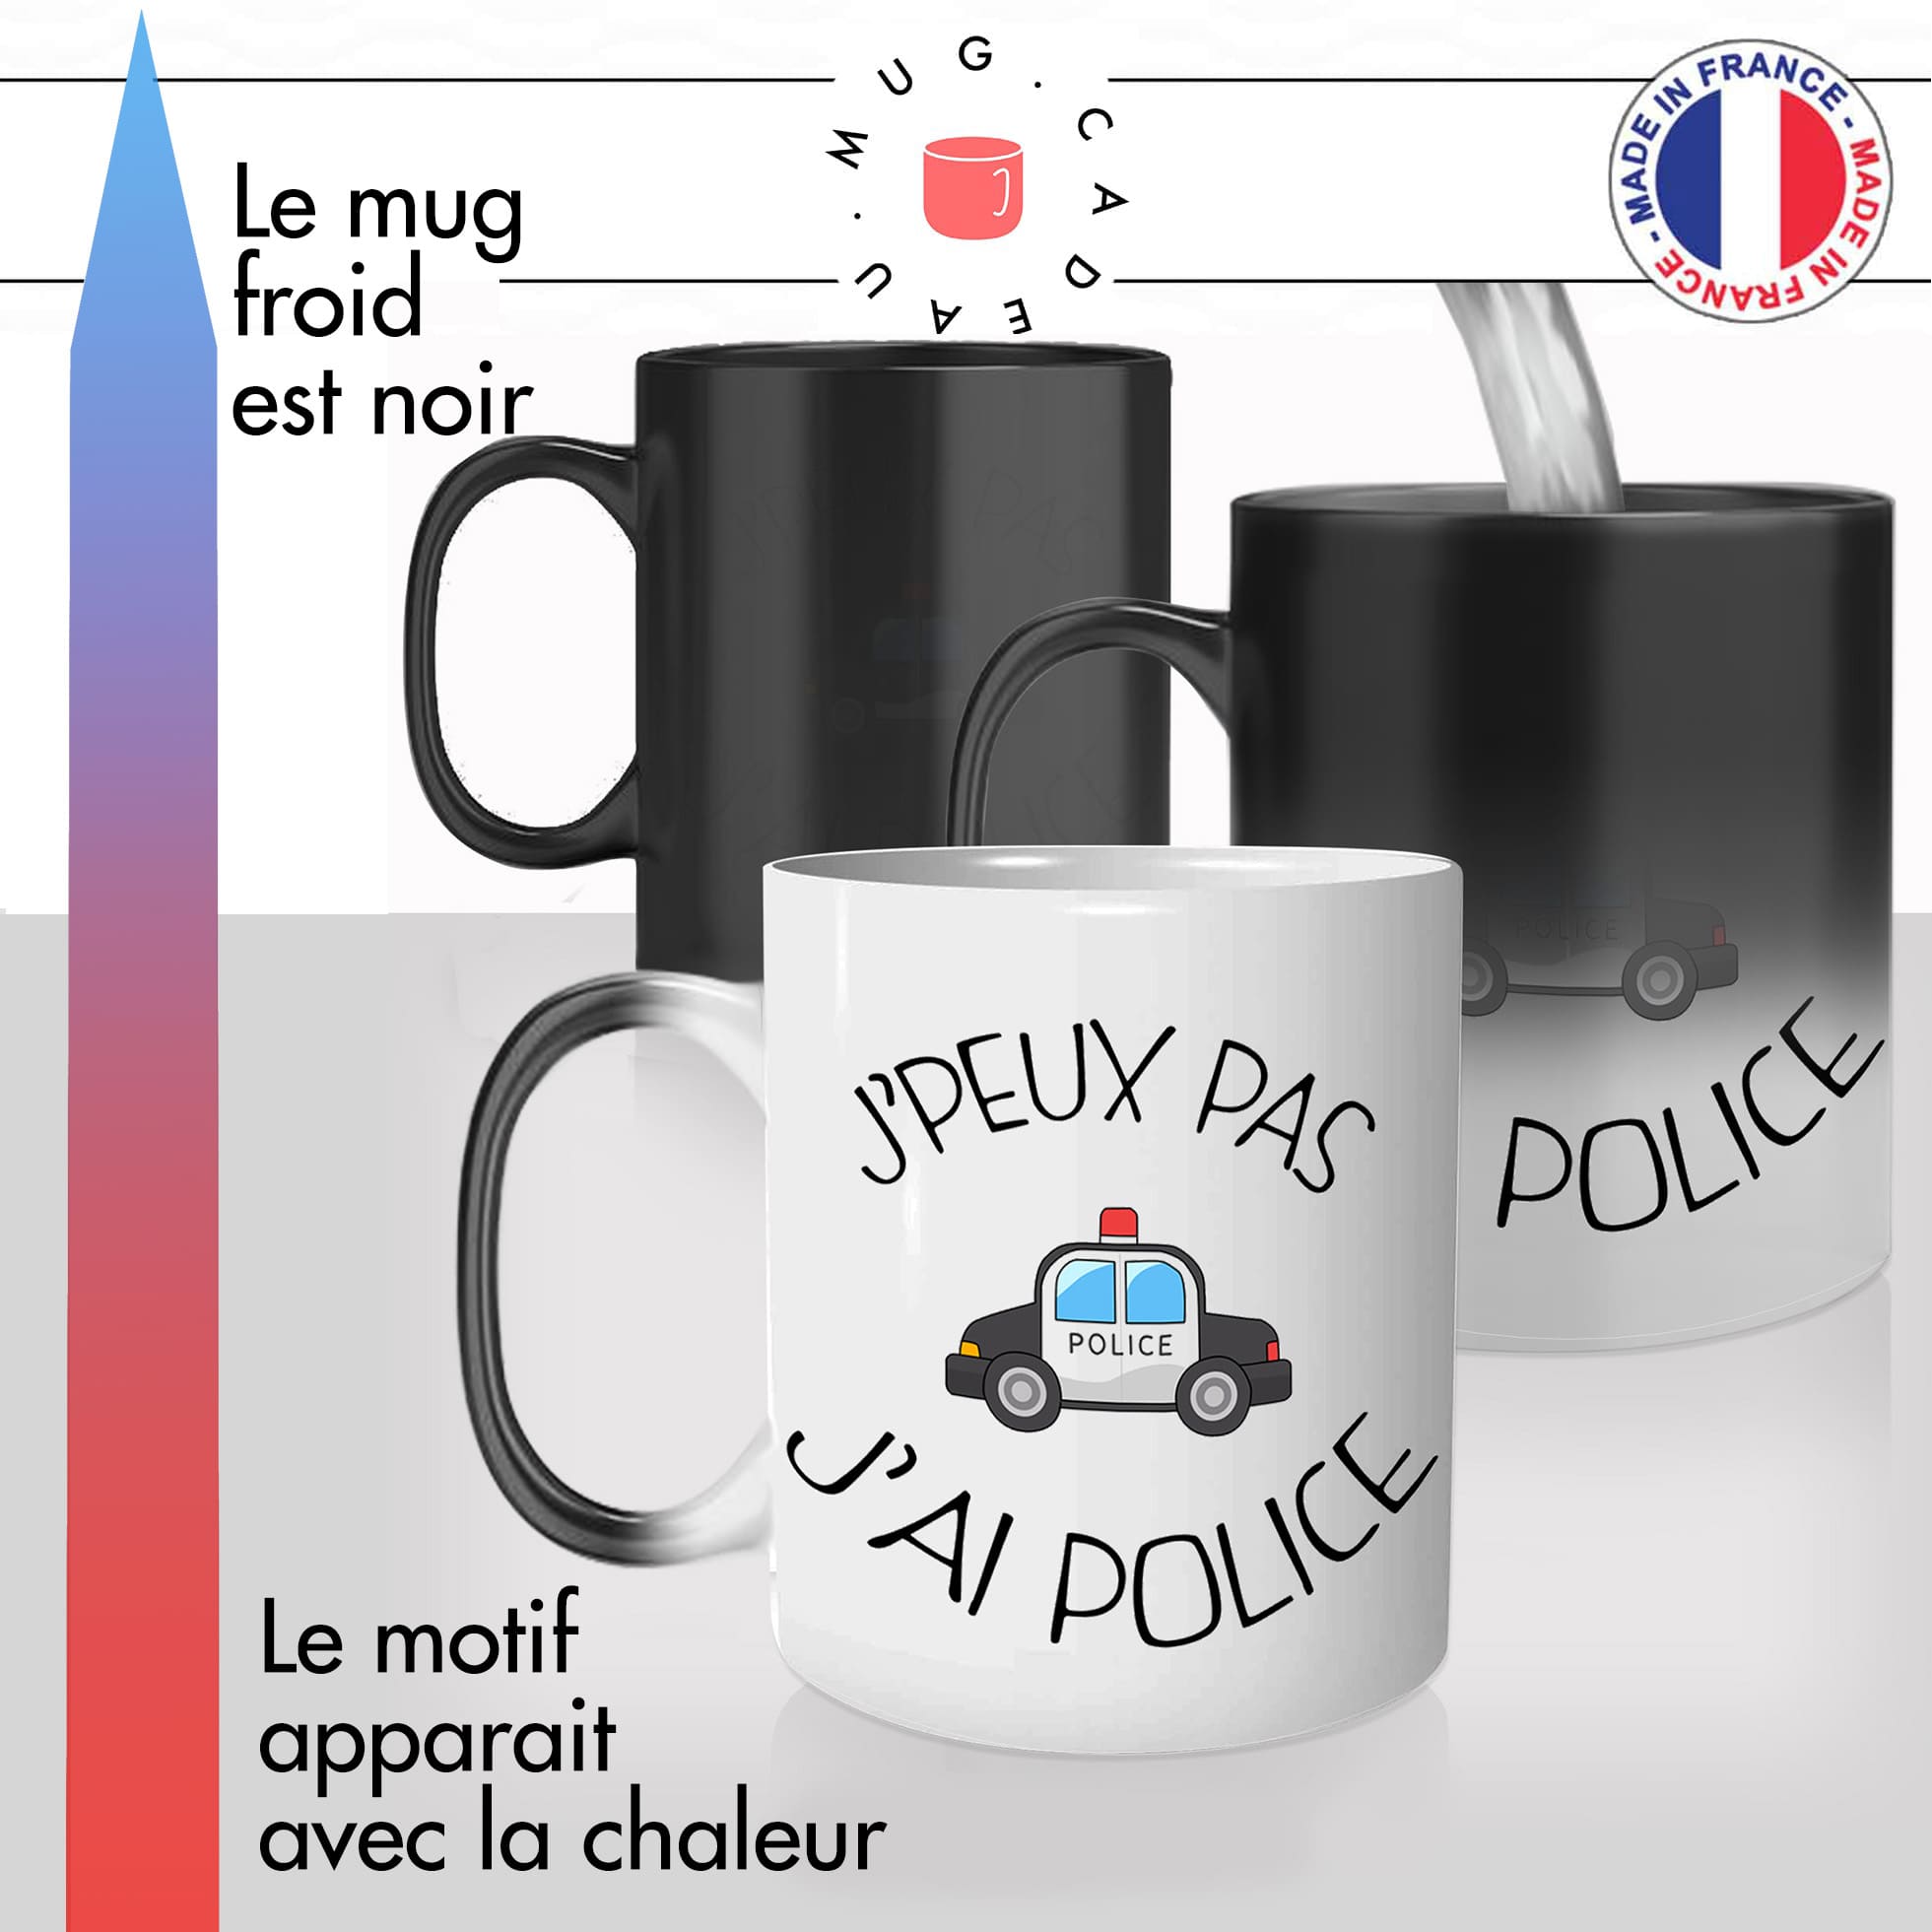 mug magique thermoréactif thermo chauffant personnalisé jpeux pas jai police policier humour personnalisable idée cadeau fun original